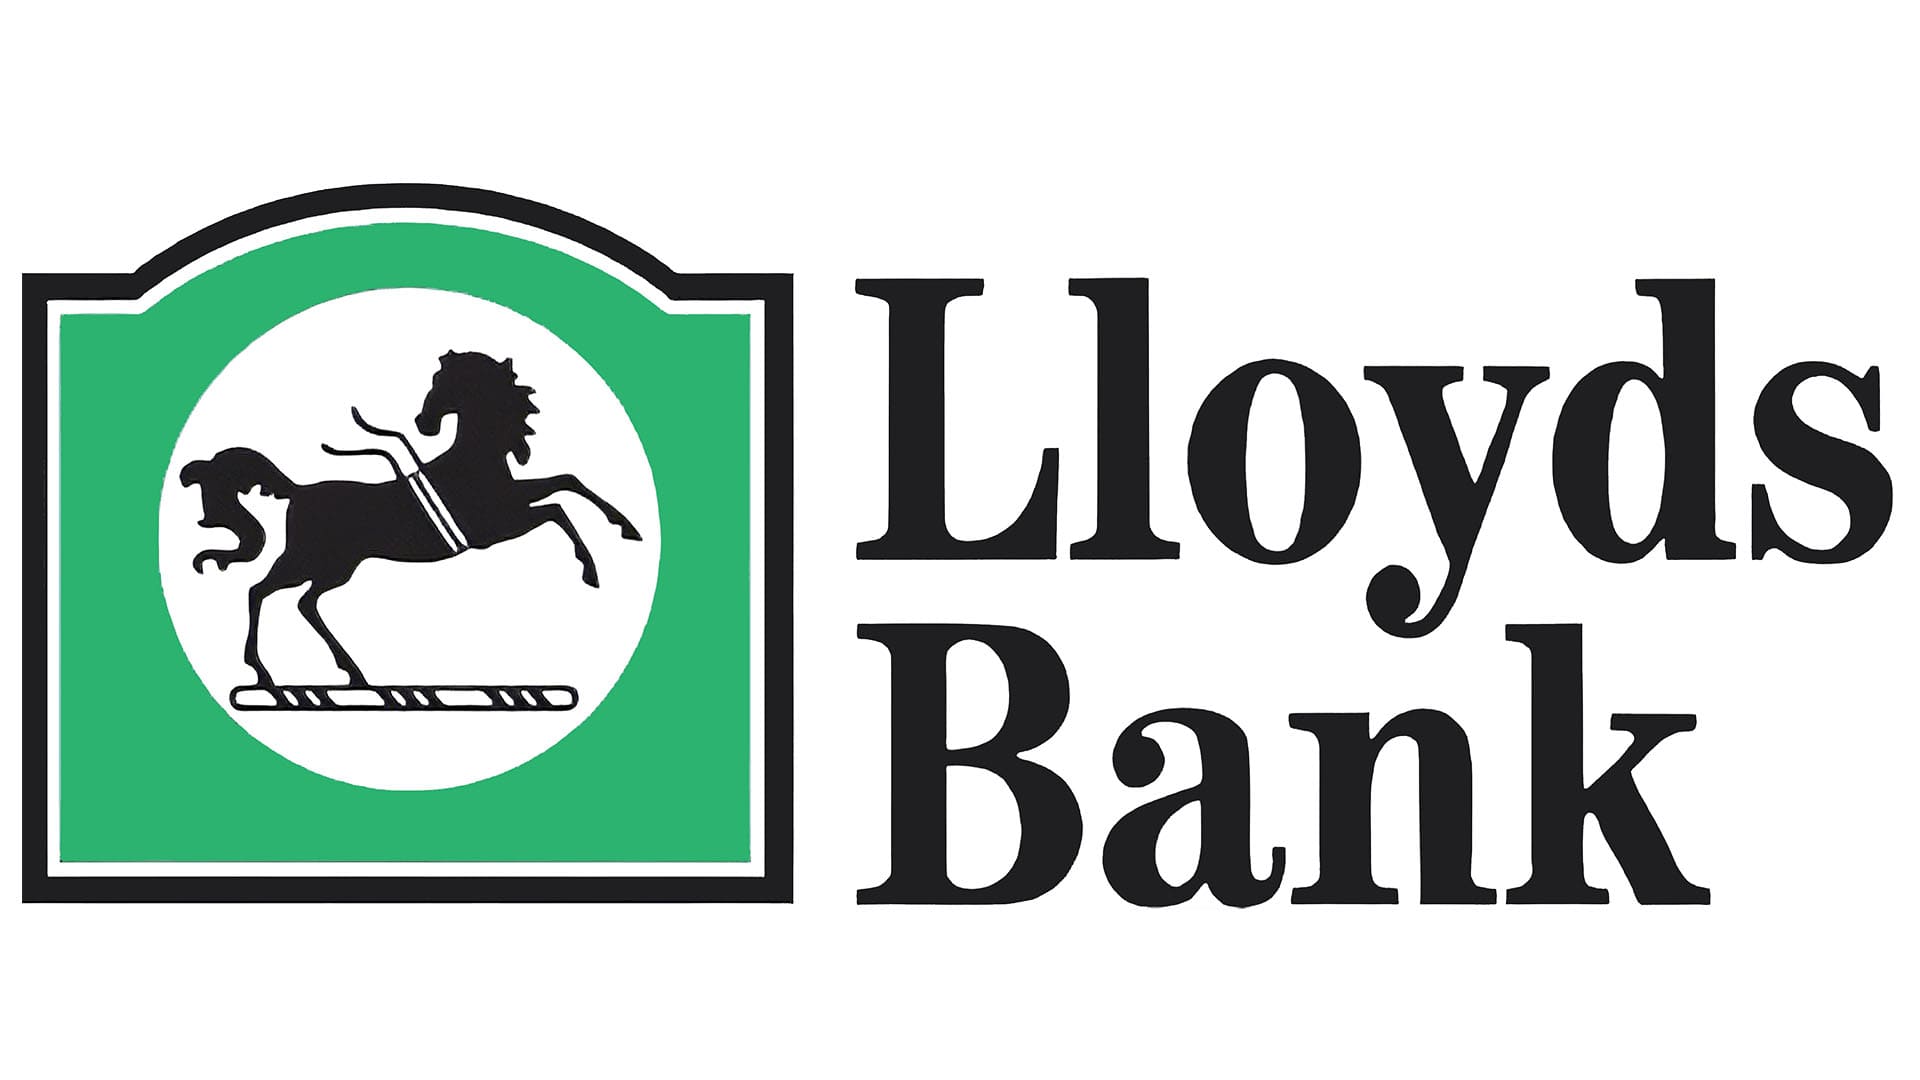 will writing service lloyds bank